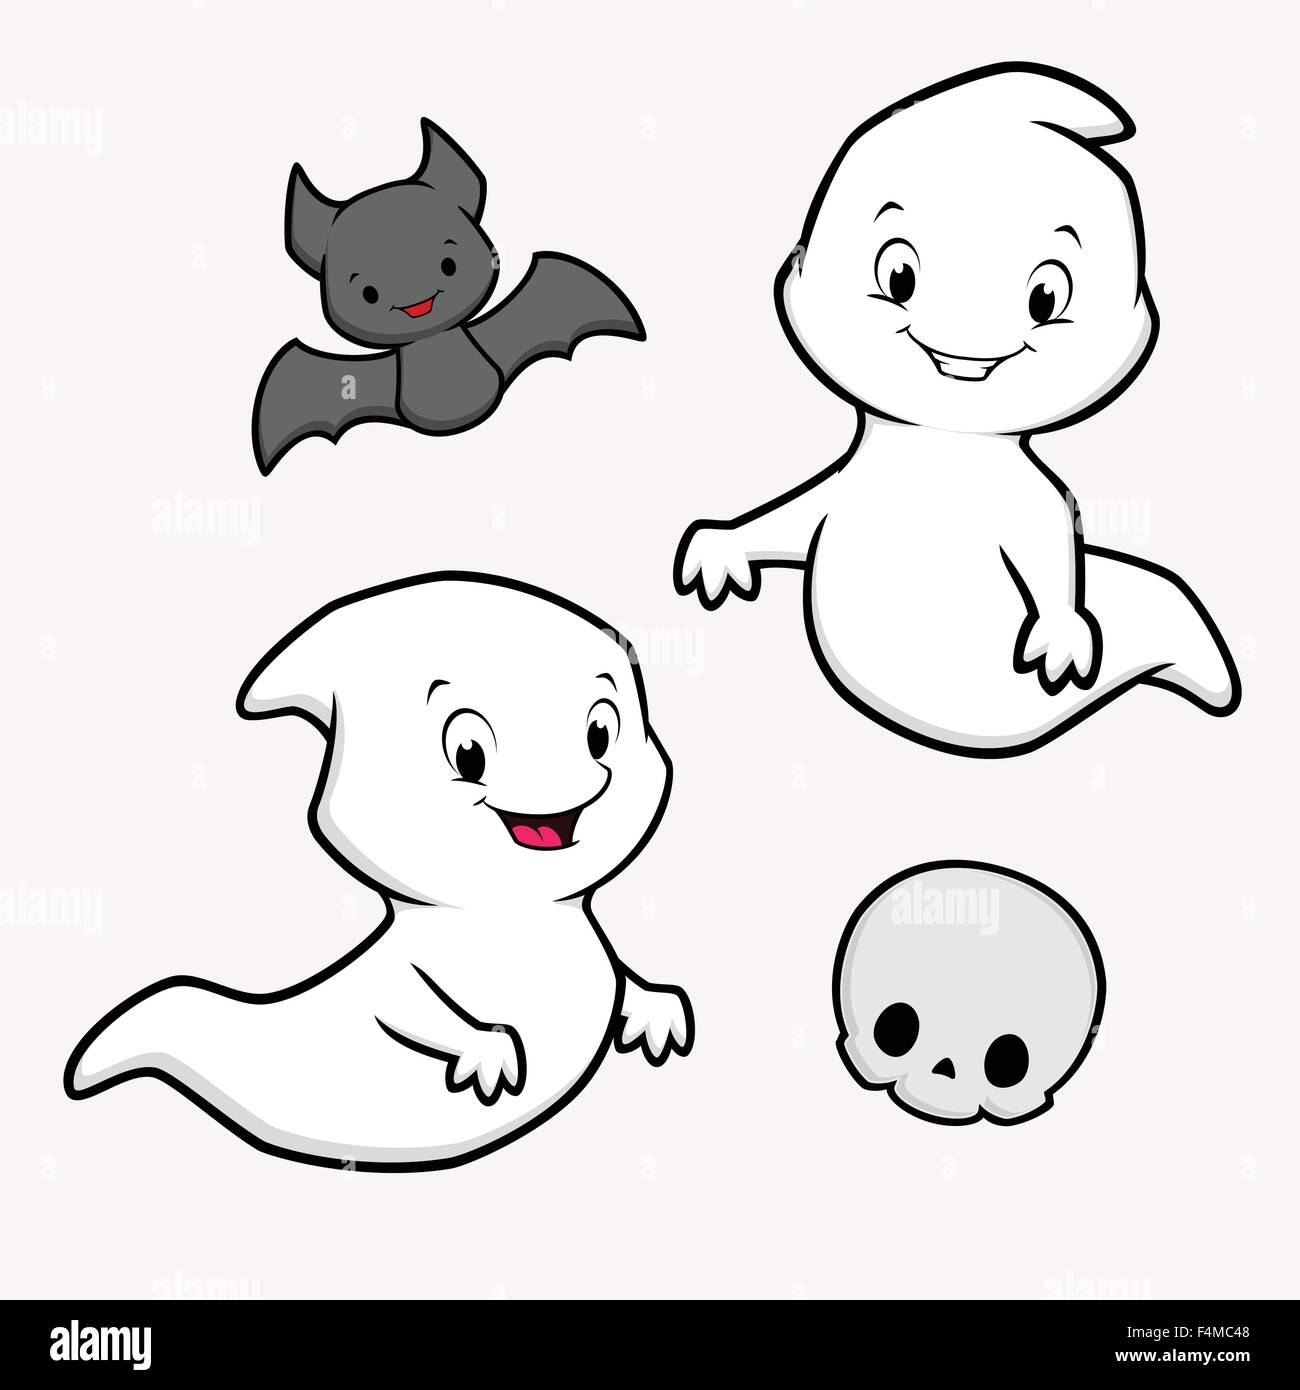 Cartoon ghost immagini e fotografie stock ad alta risoluzione - Alamy